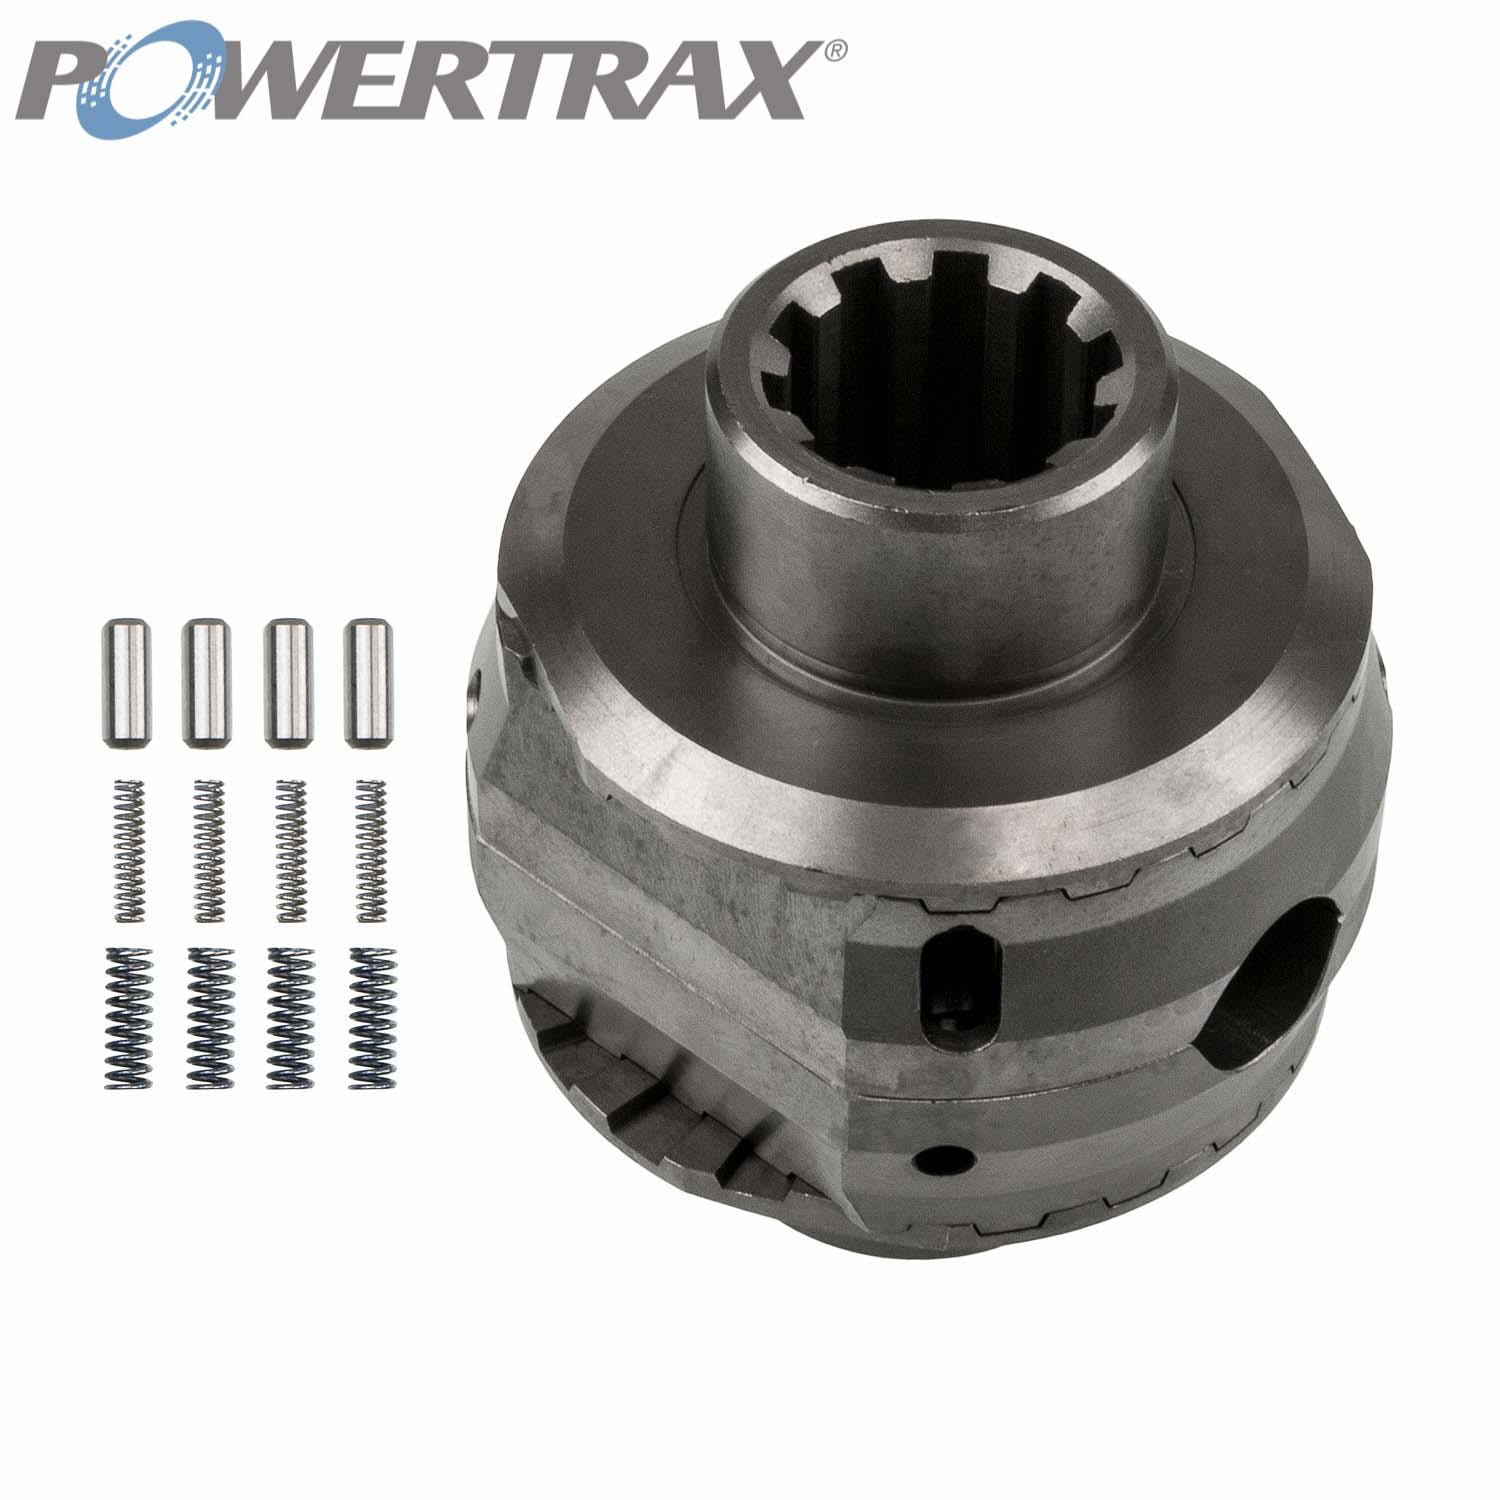 PowerTrax 2110-LR Lock Right Locker